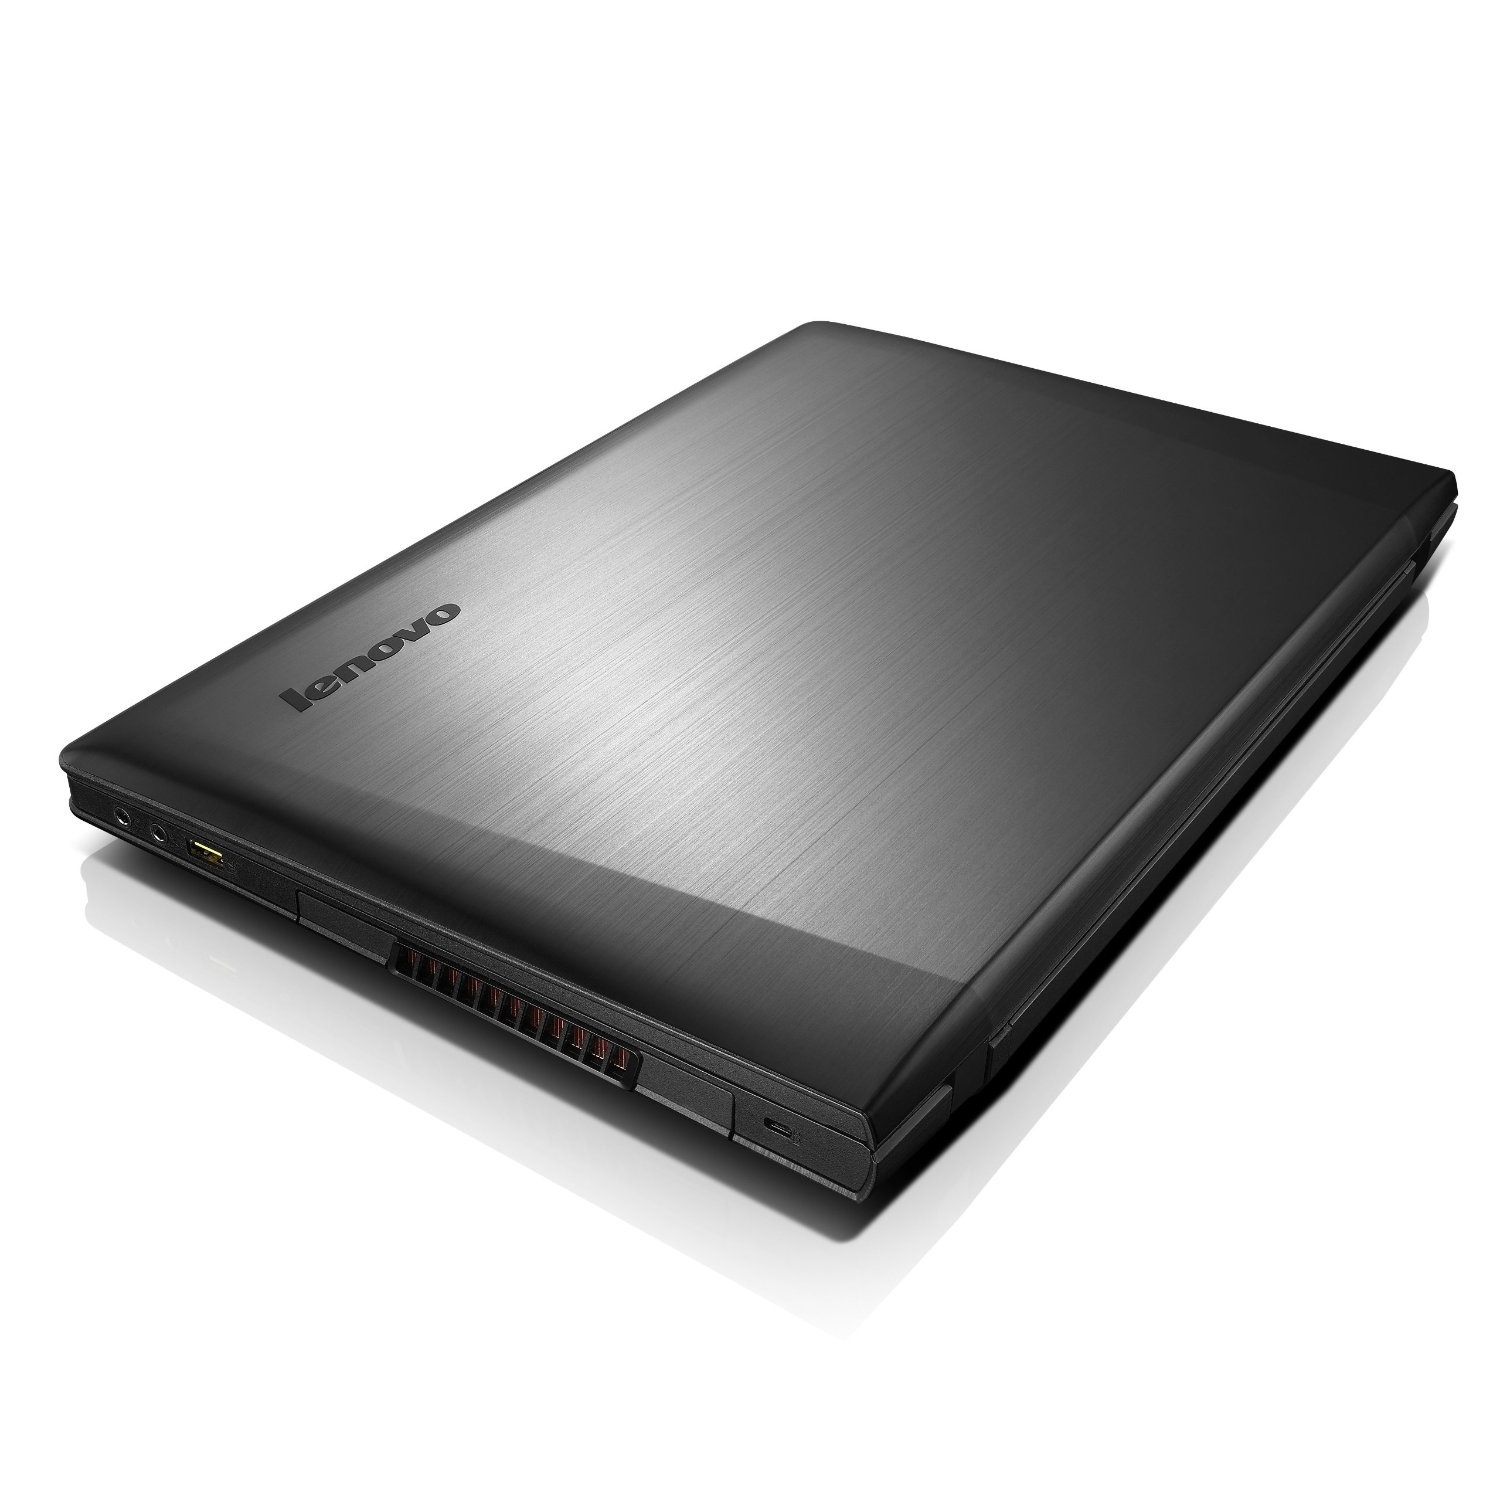 Laptop Lenovo IDEAPAD500 15ISK-80NT00L8VN - Core i5 6200U, 4Gb RAM, 8Gb SSD, VGA rời, 15.6Inch Full HD